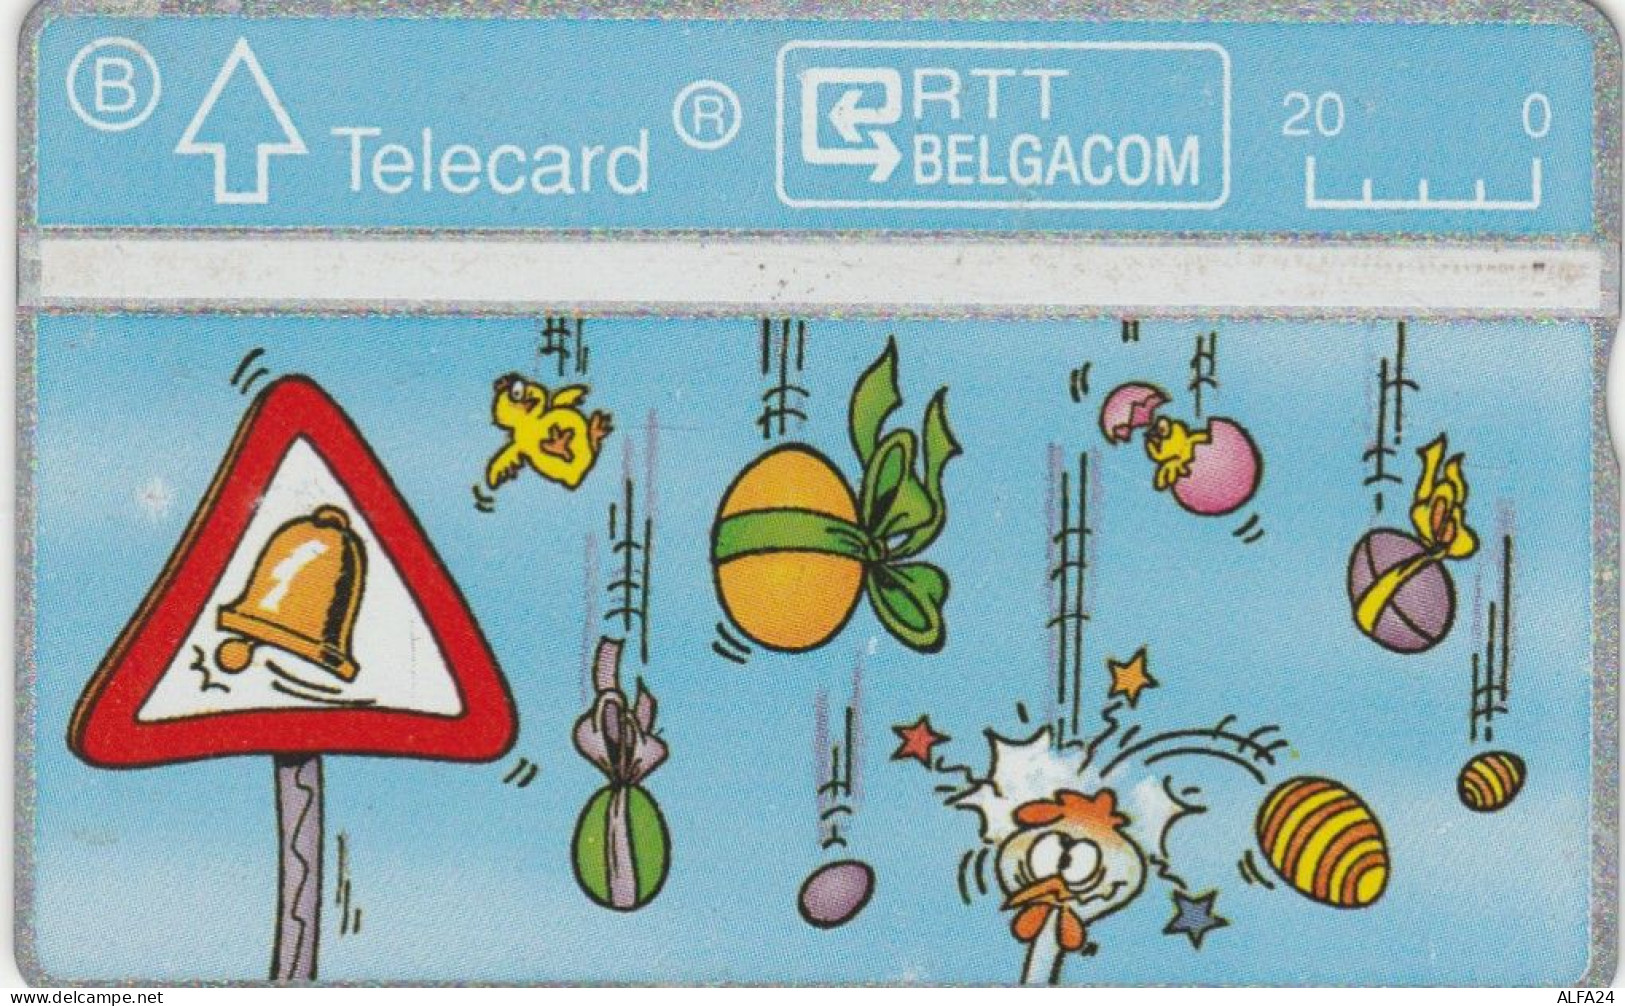 PHONE CARD BELGIO CARTOONS (E95.15.6 - Zonder Chip